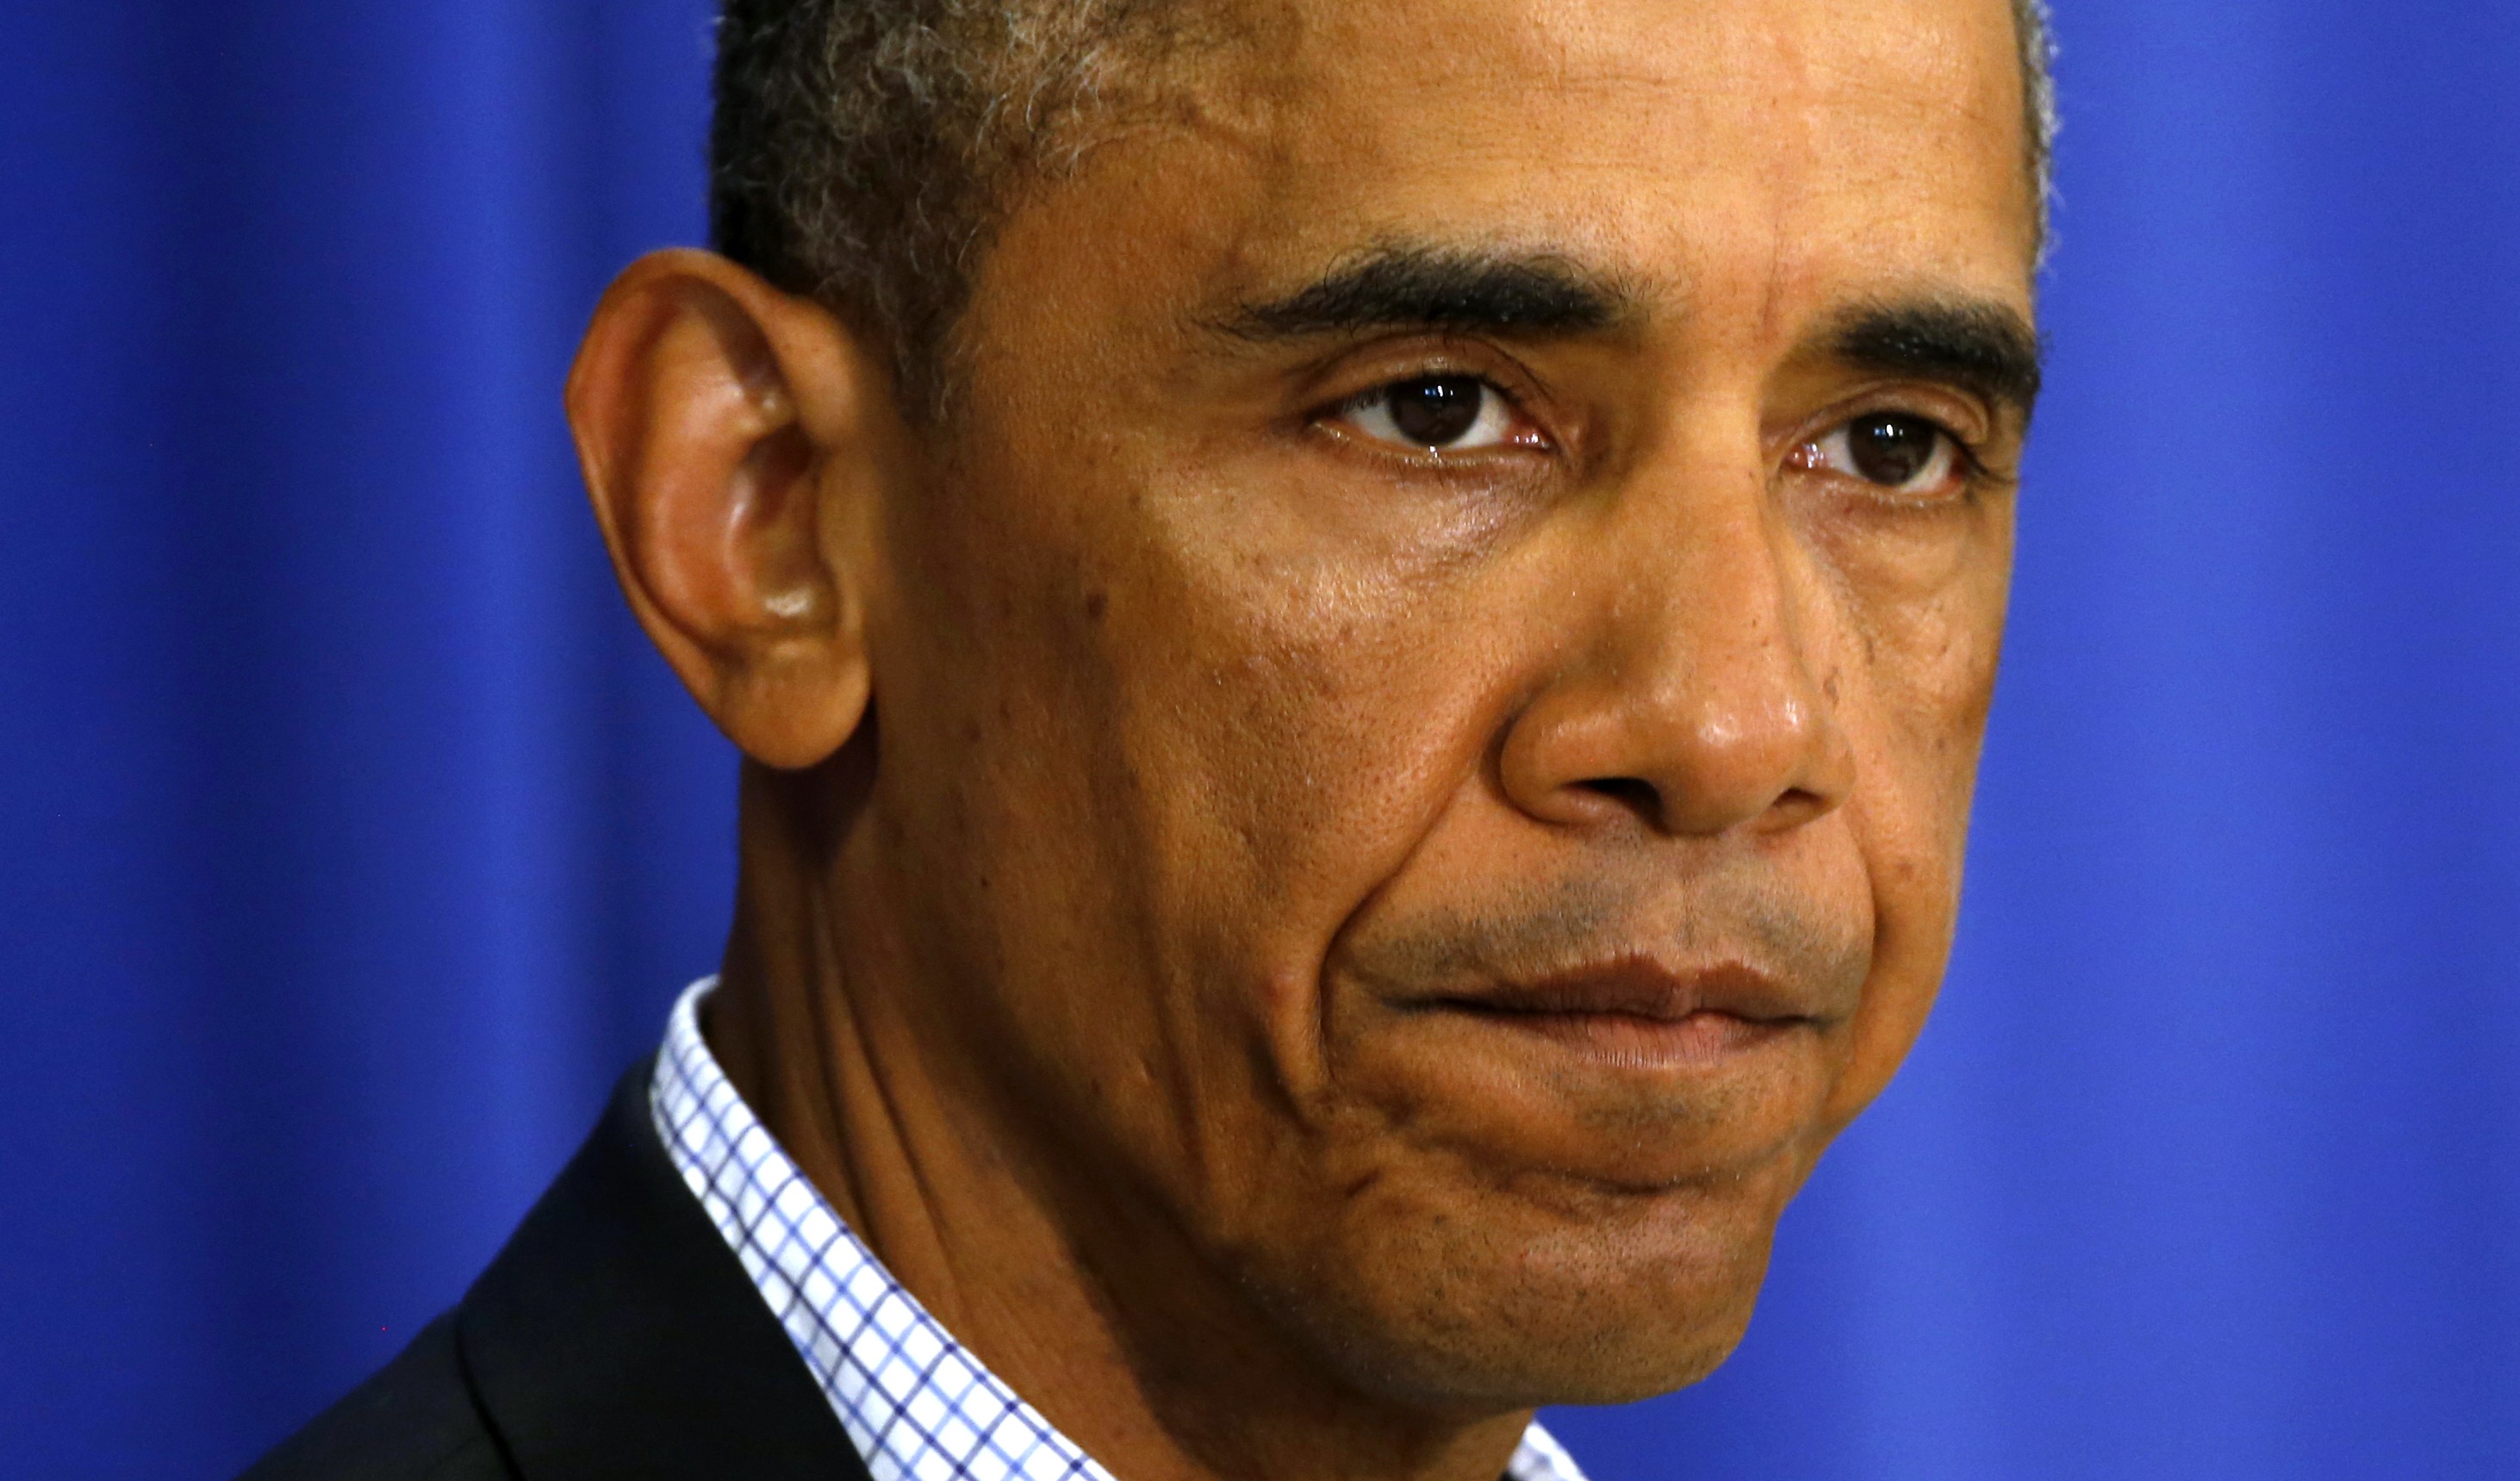 Obama critica saqueos y uso excesivo de la fuerza policial en Misuri